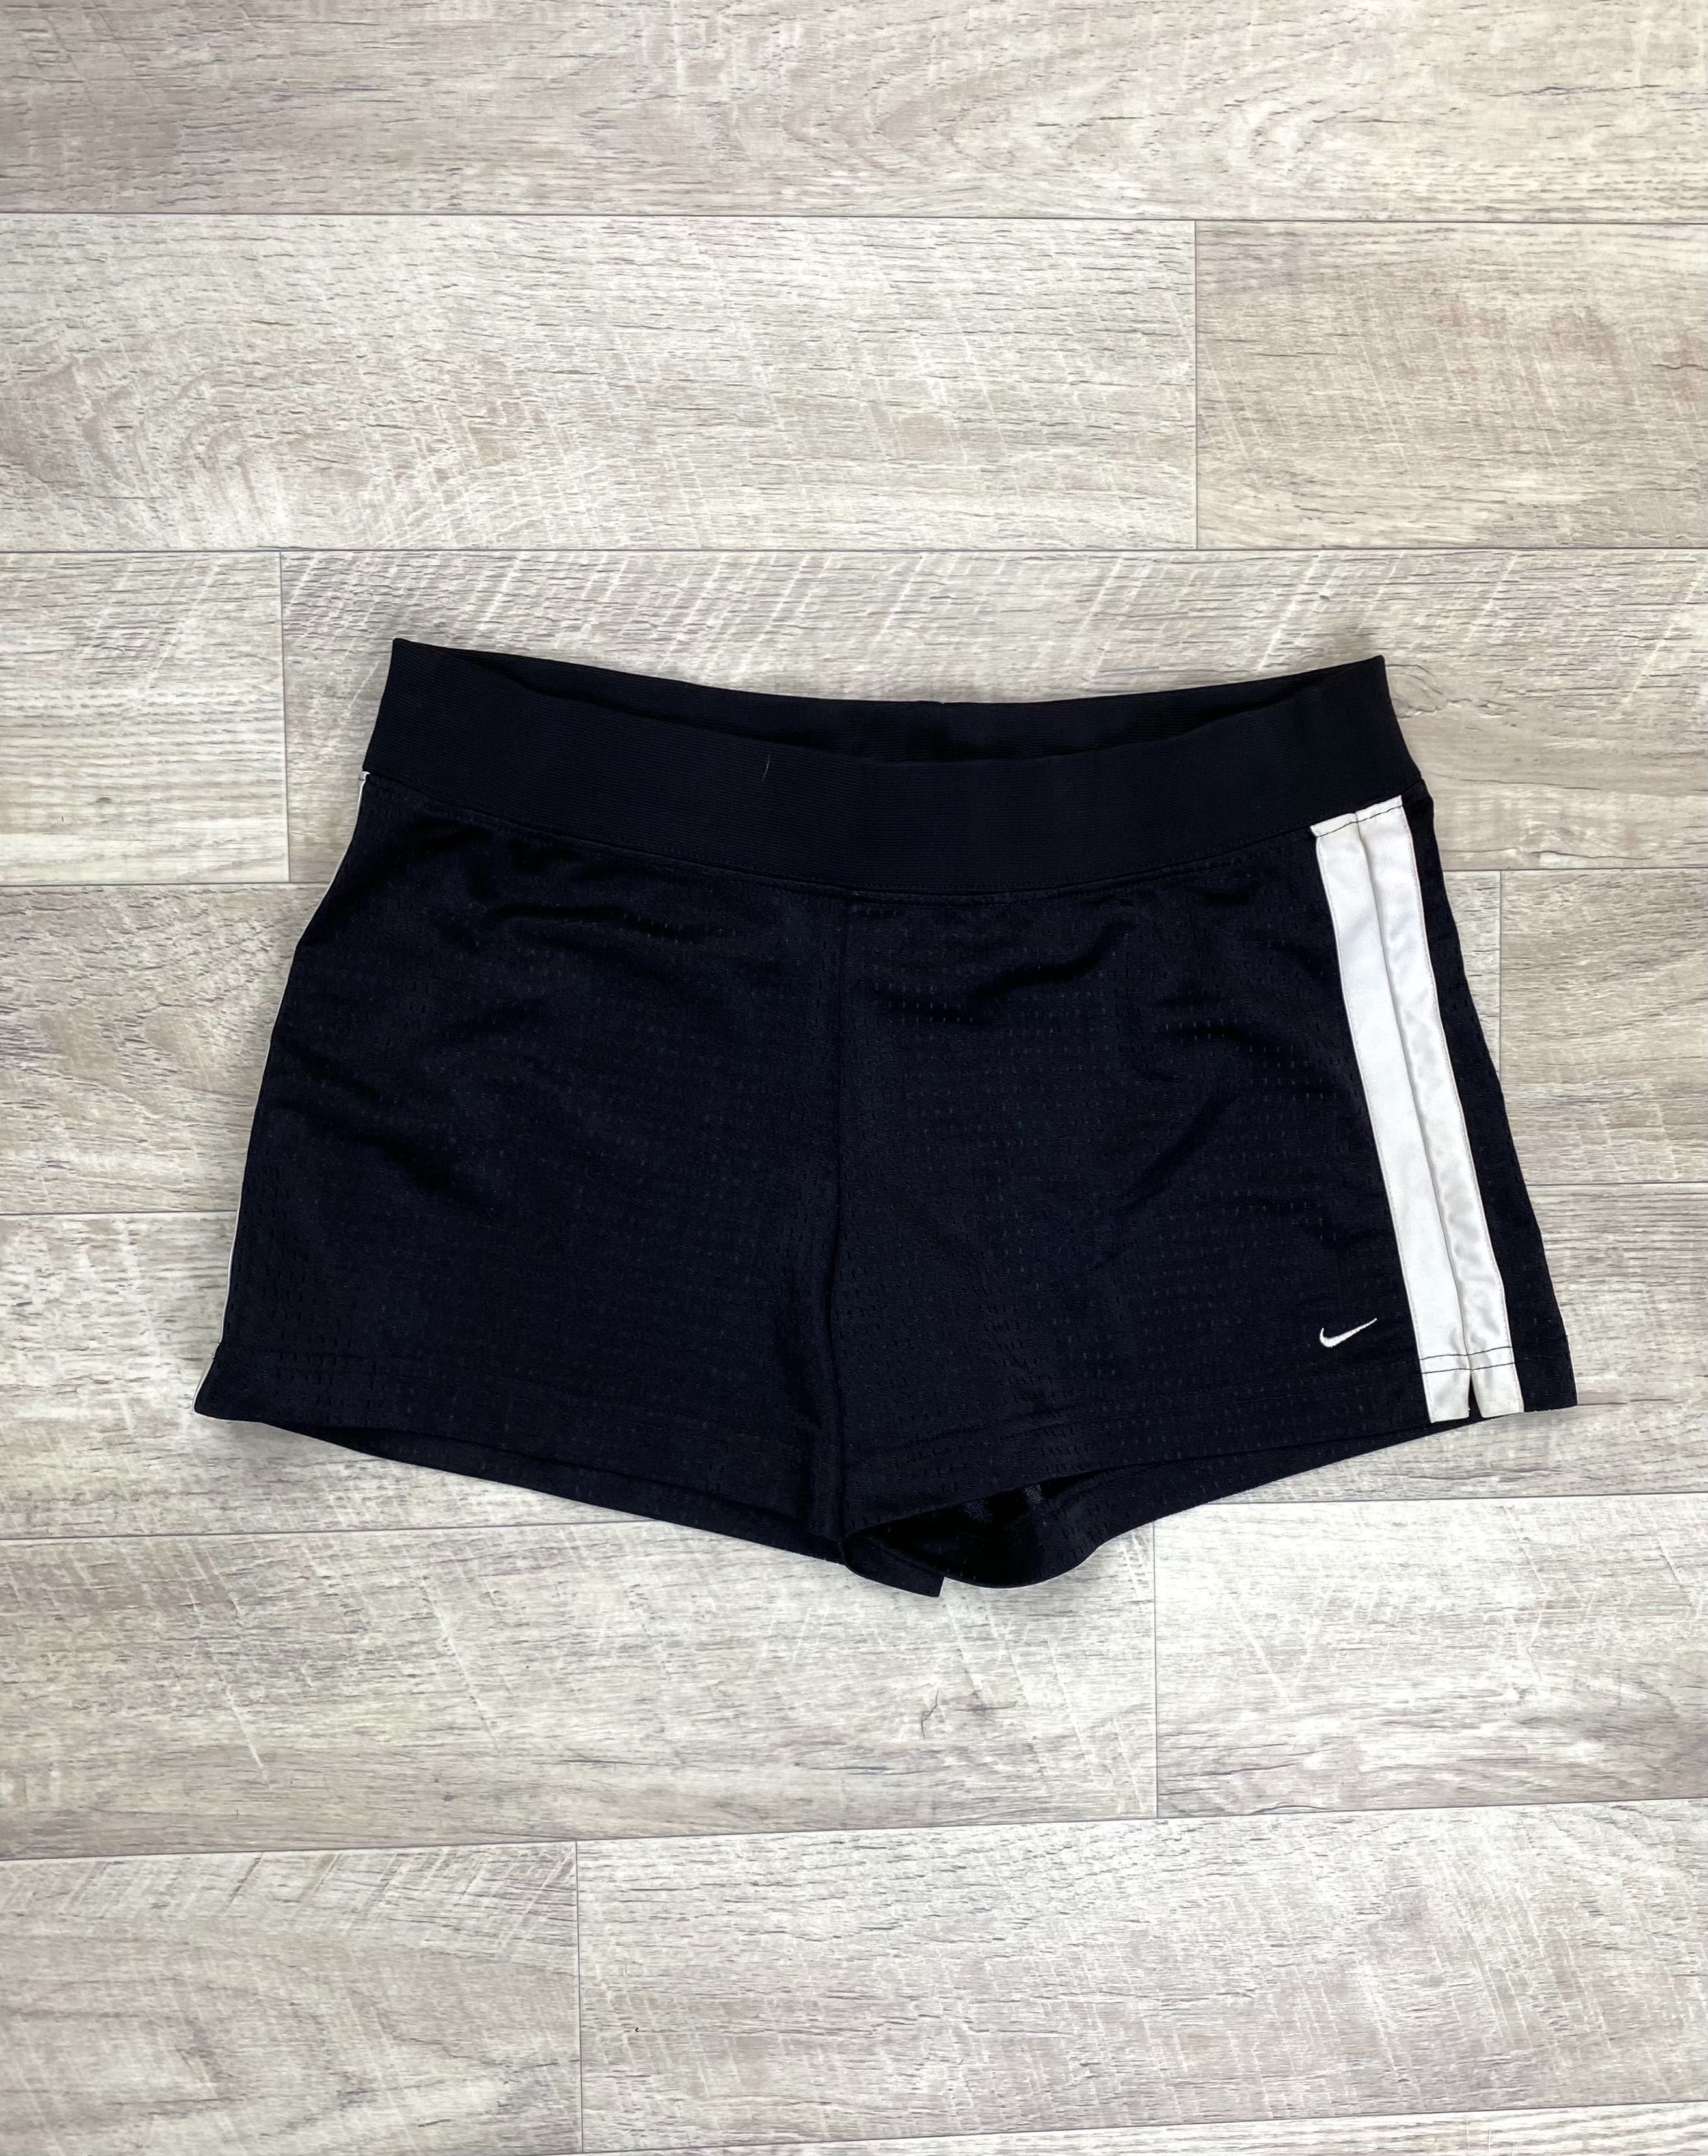 Nike шорты 08/10 размер M женские спортивные чёрные оригинал